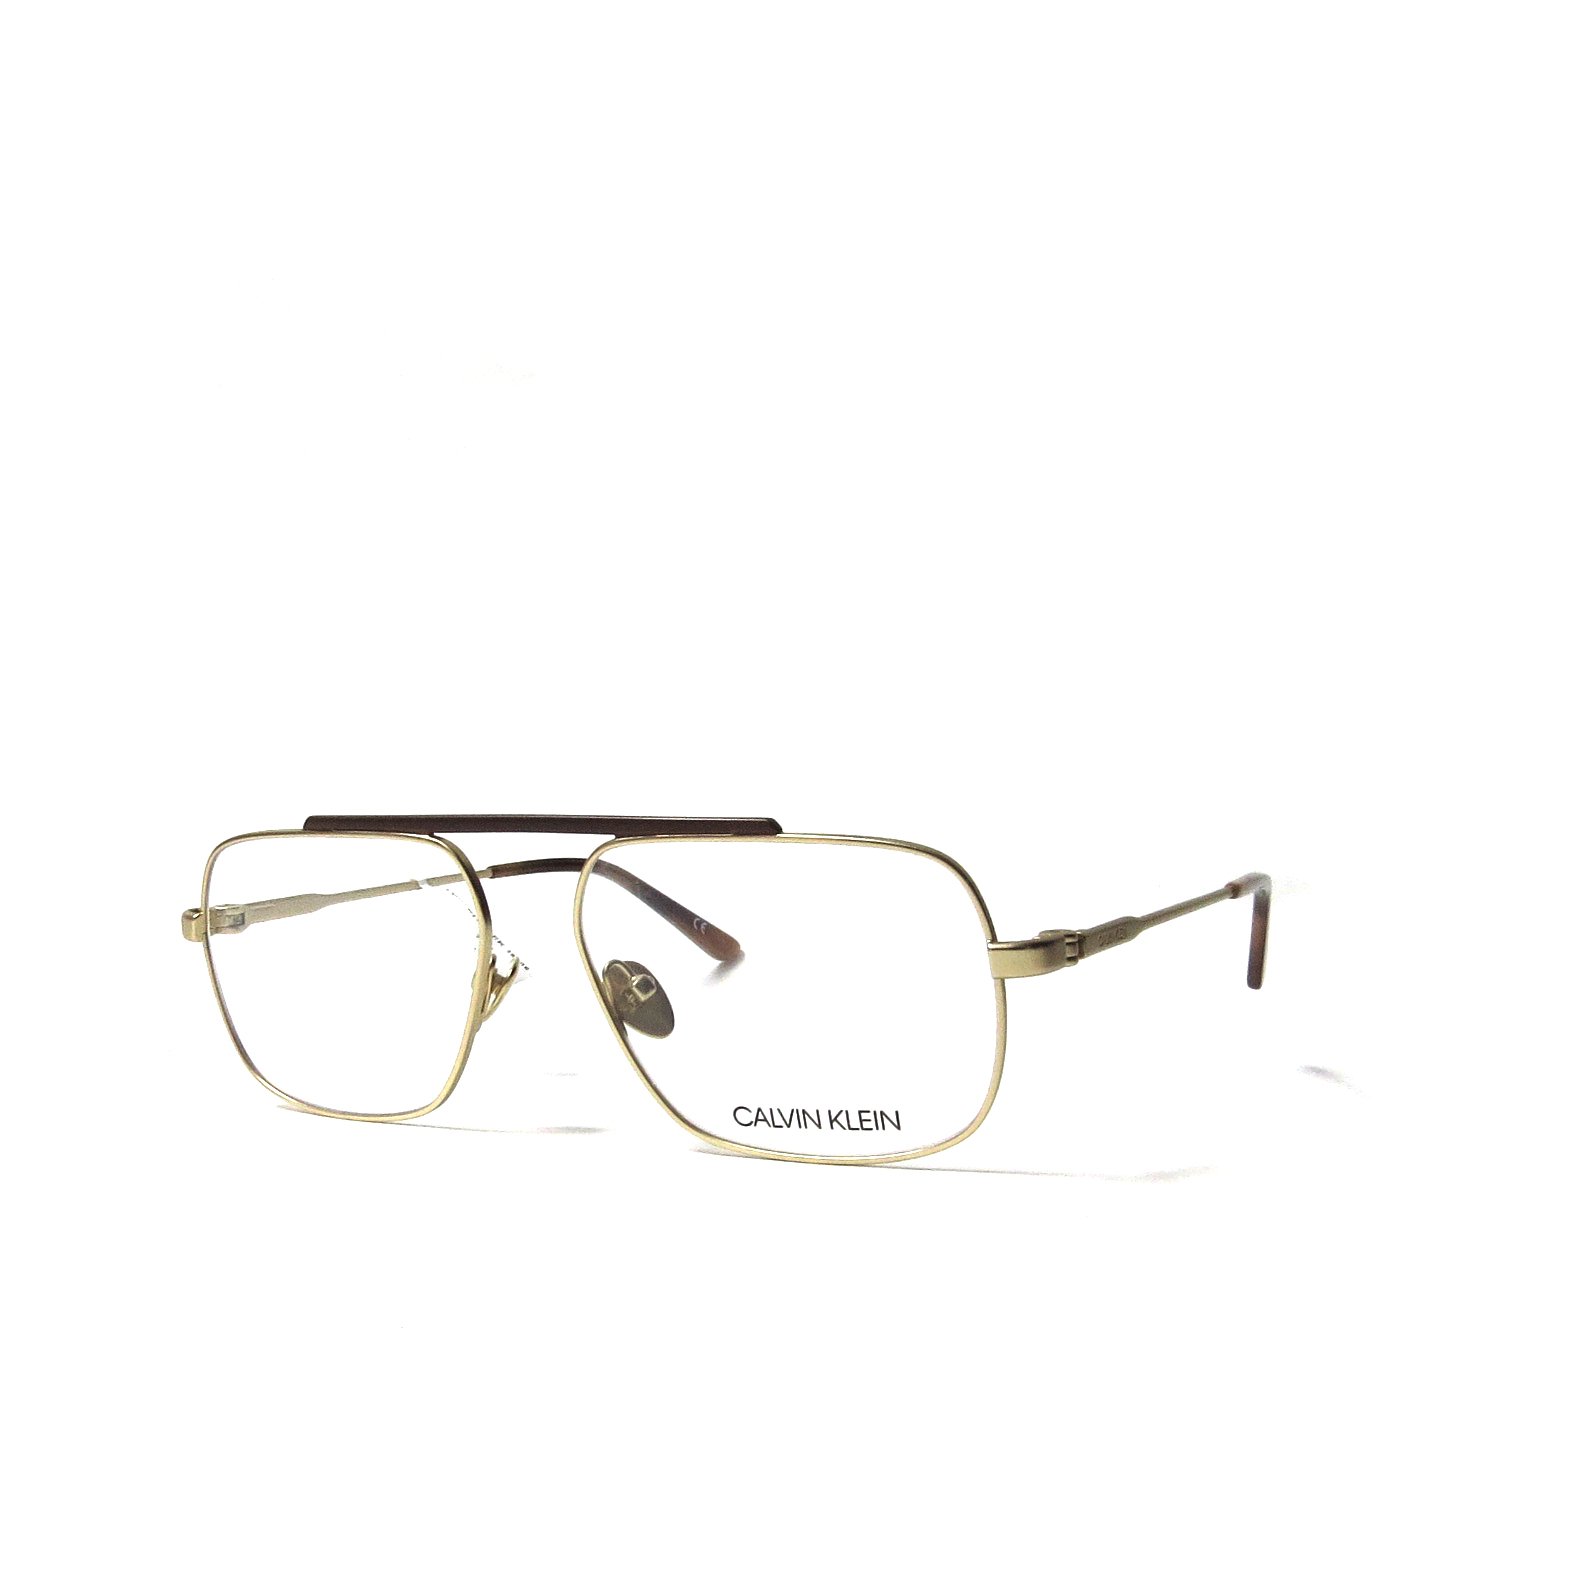 las gafas CALVIN KLEIN - 18106 - Óptica gafas